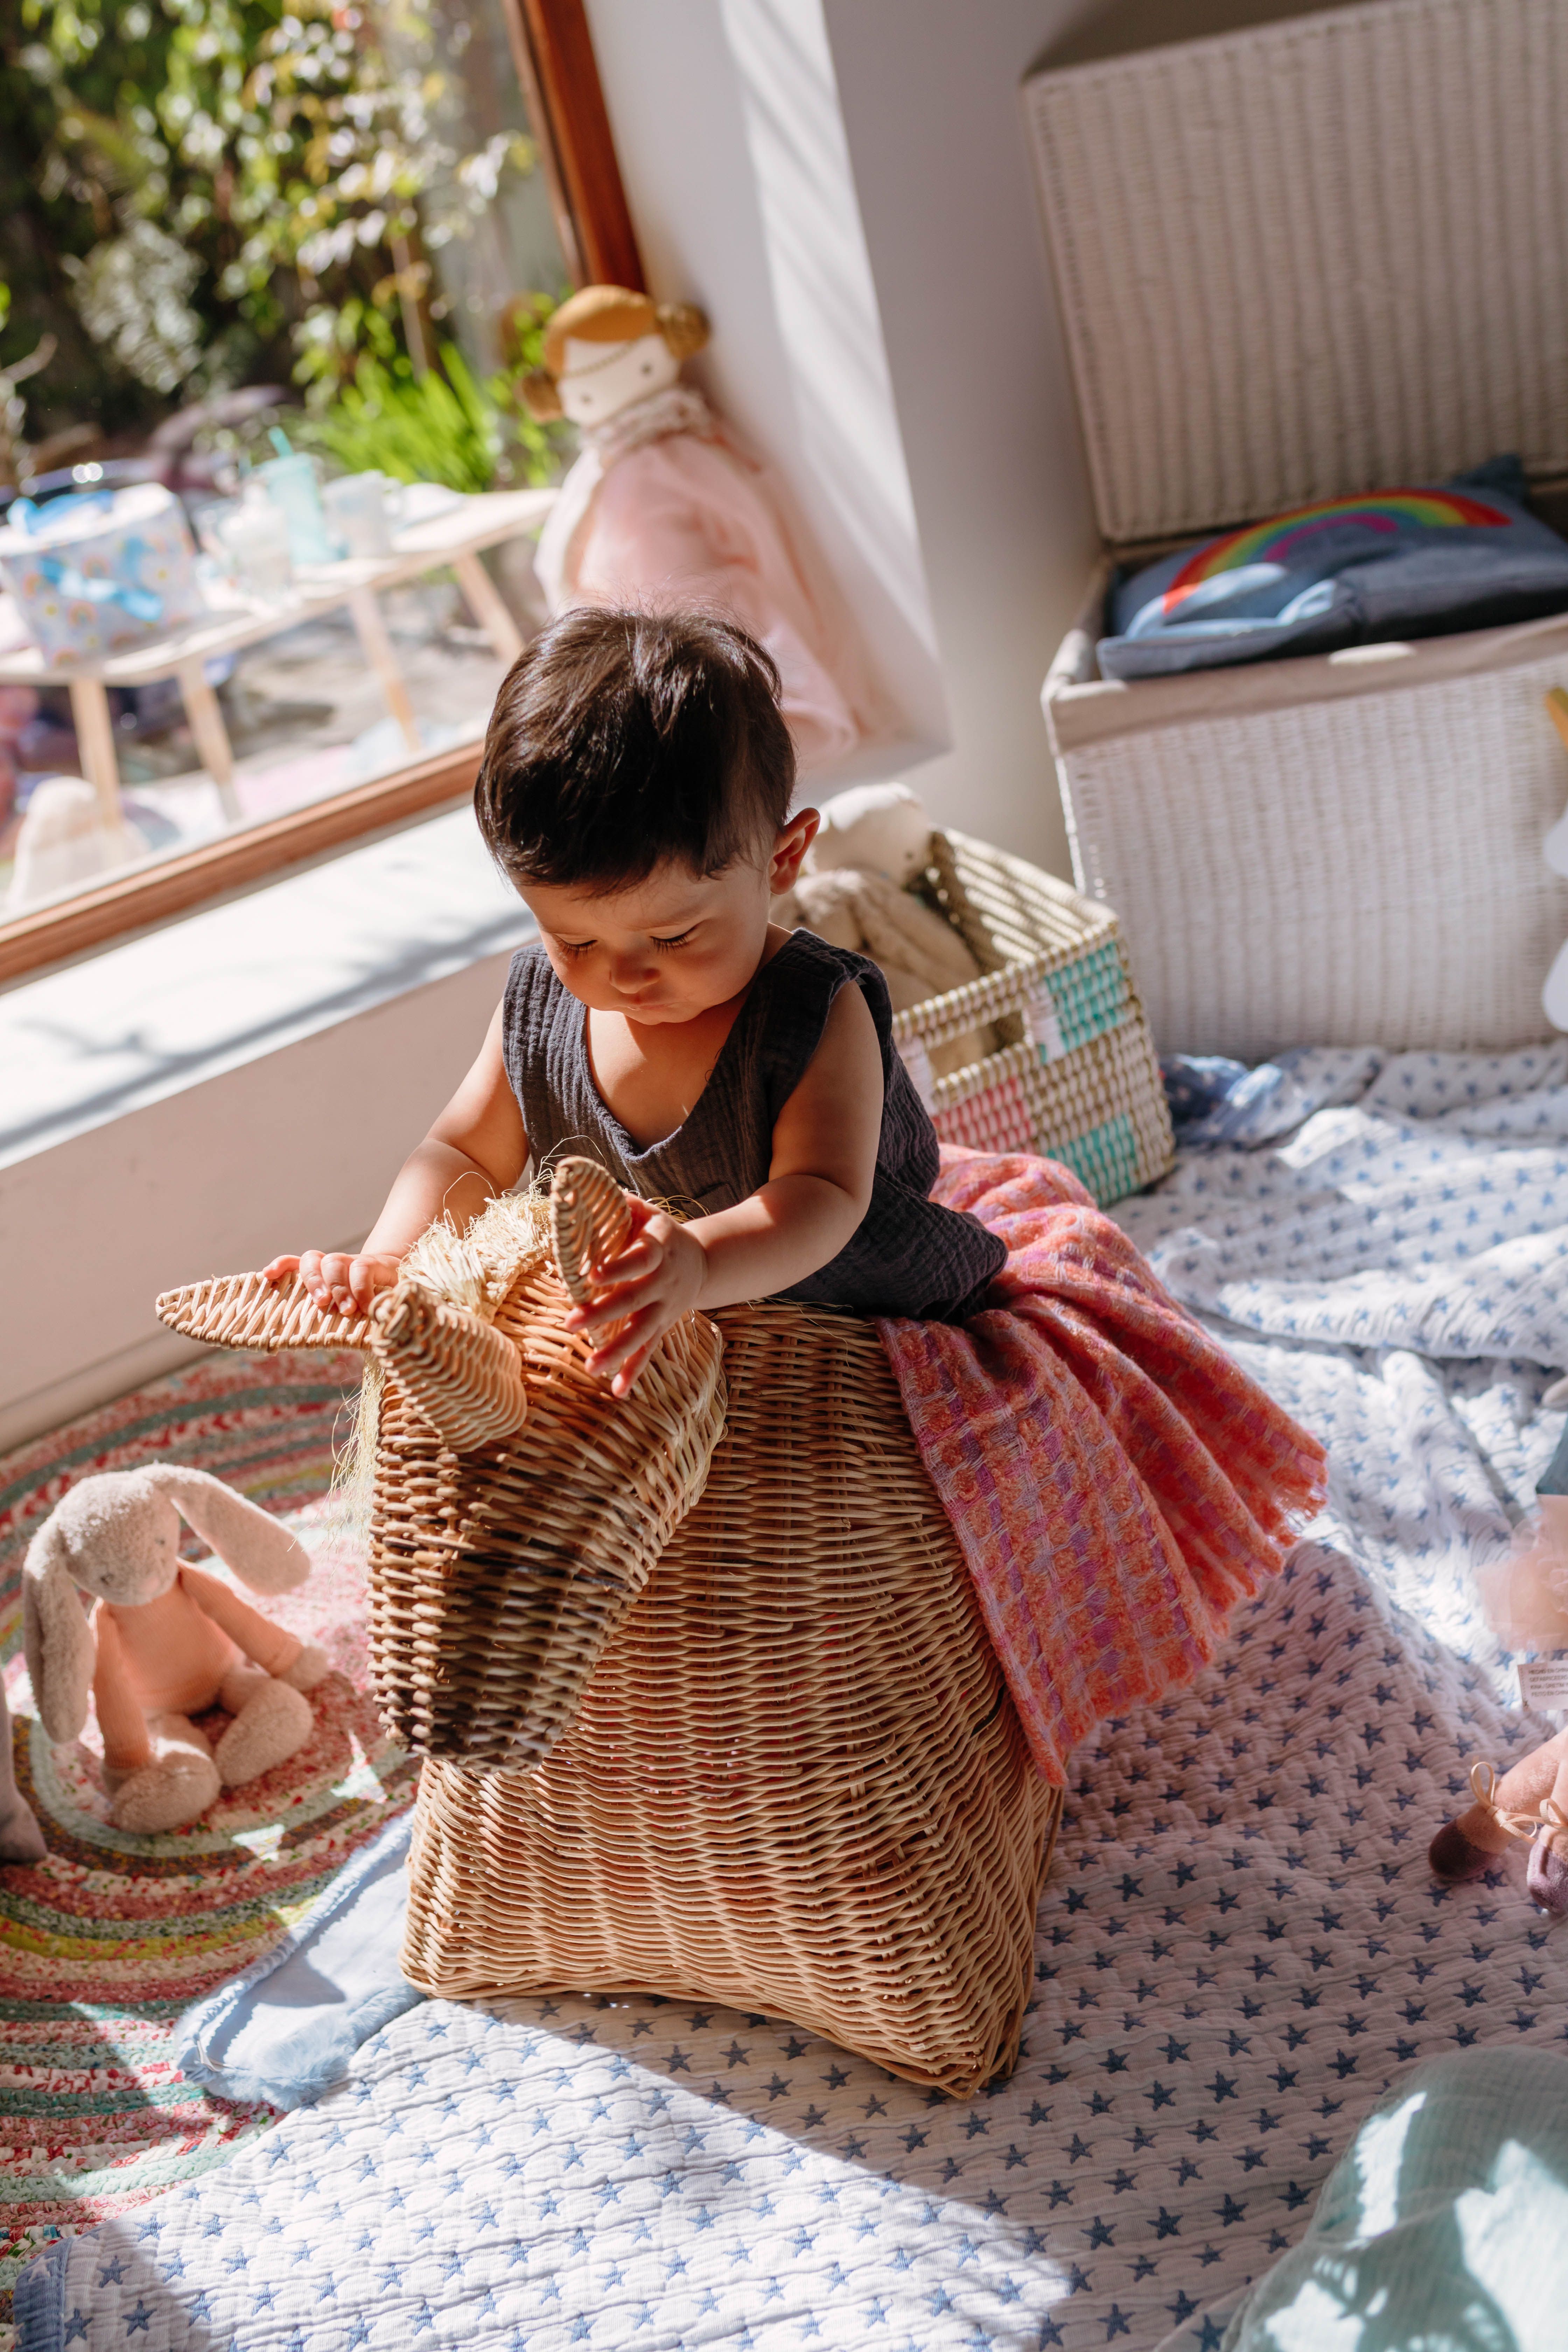  Zara Home pokrenula projekt 'Welcome Baby'! San snova svake majke i buduće majke ❤️️